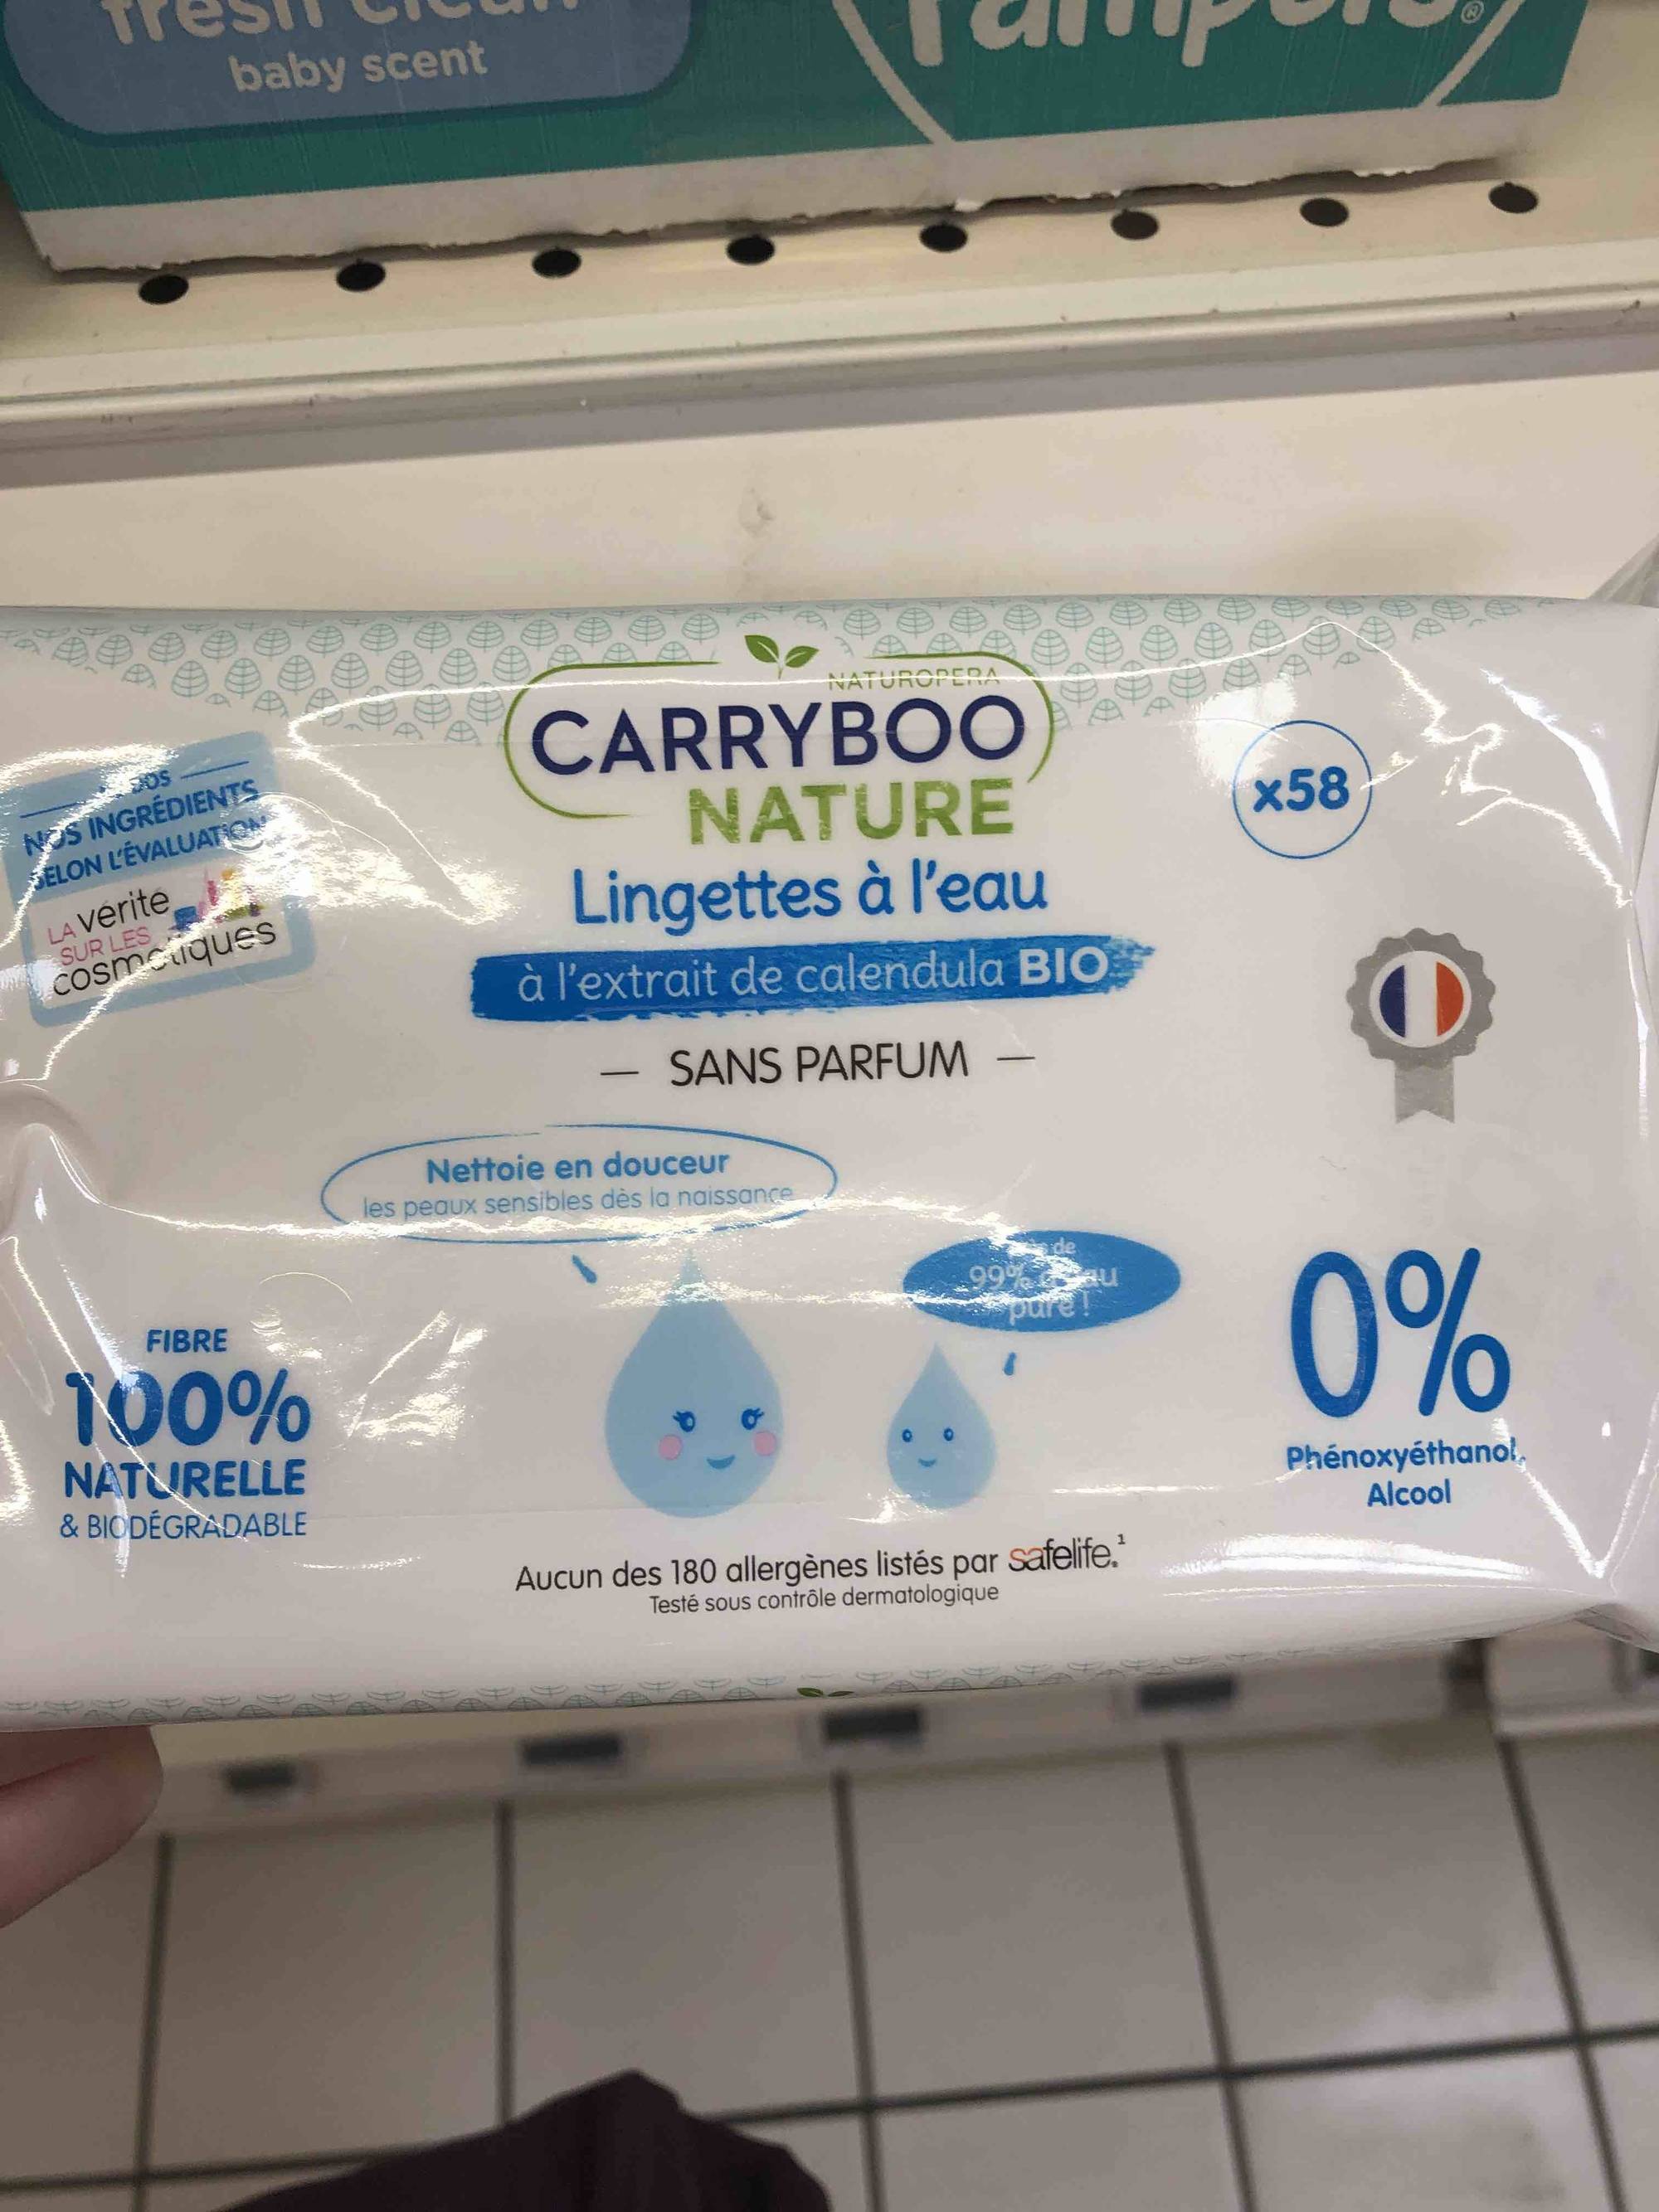 CARRYBOO NATURE - Lingettes à l'eau bio